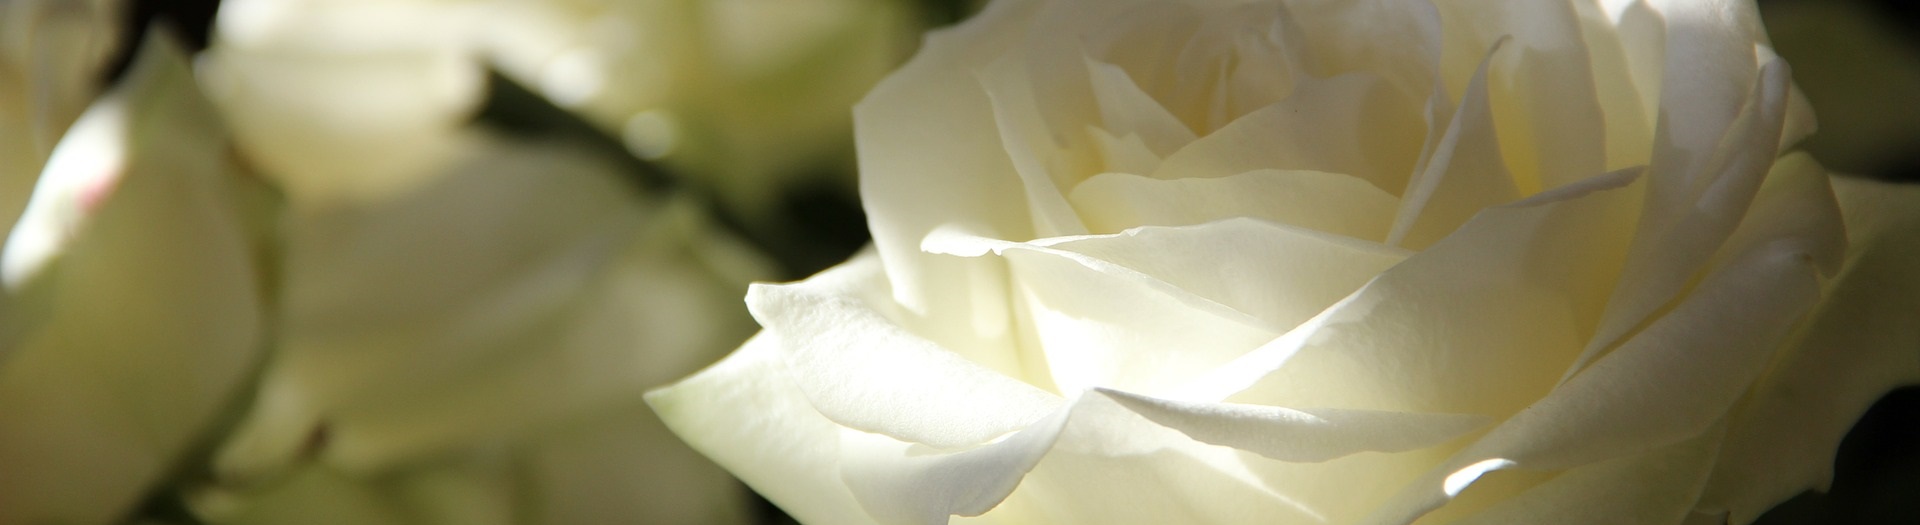 Kaunista oma koduaeda Põltsamaa Roosiaias kasvatatud roosidega